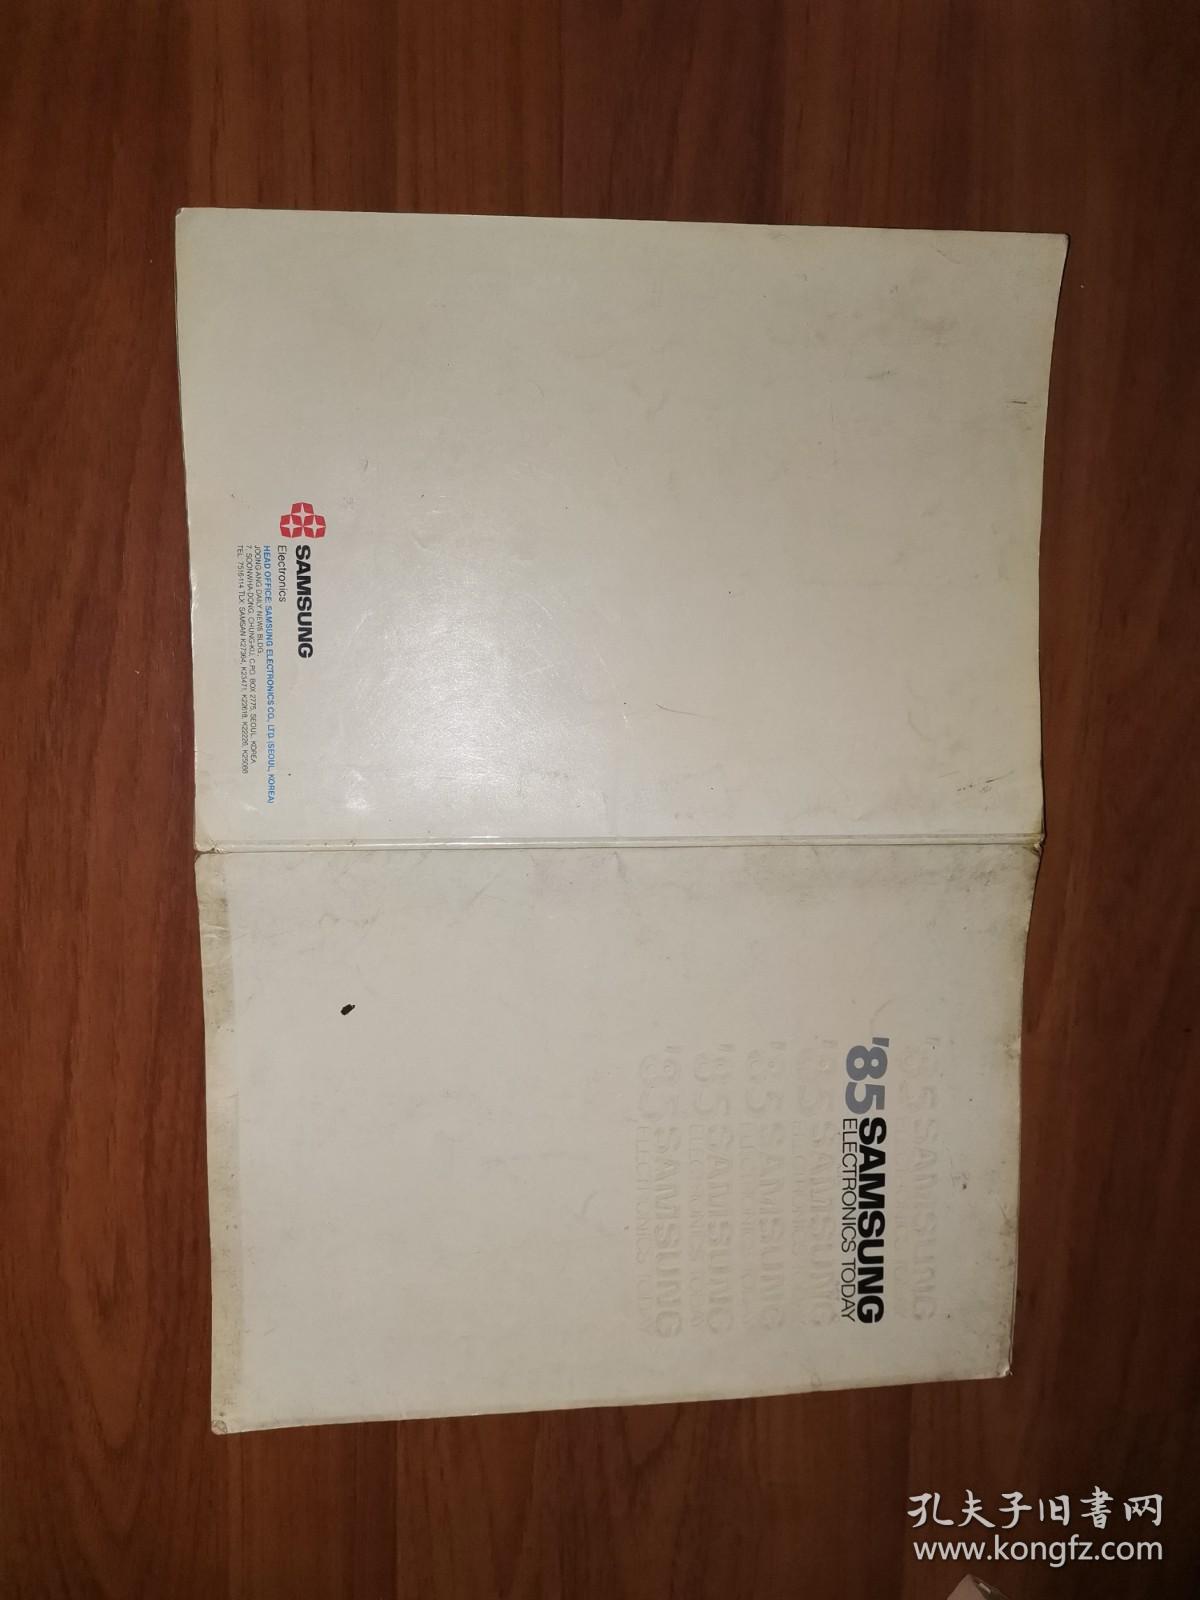 1985年SAMSUNG ELECTRONICS TODAY（三星电子）早期宣传册（封面旧，内页已散开）英文版，韩国原版，比较稀少